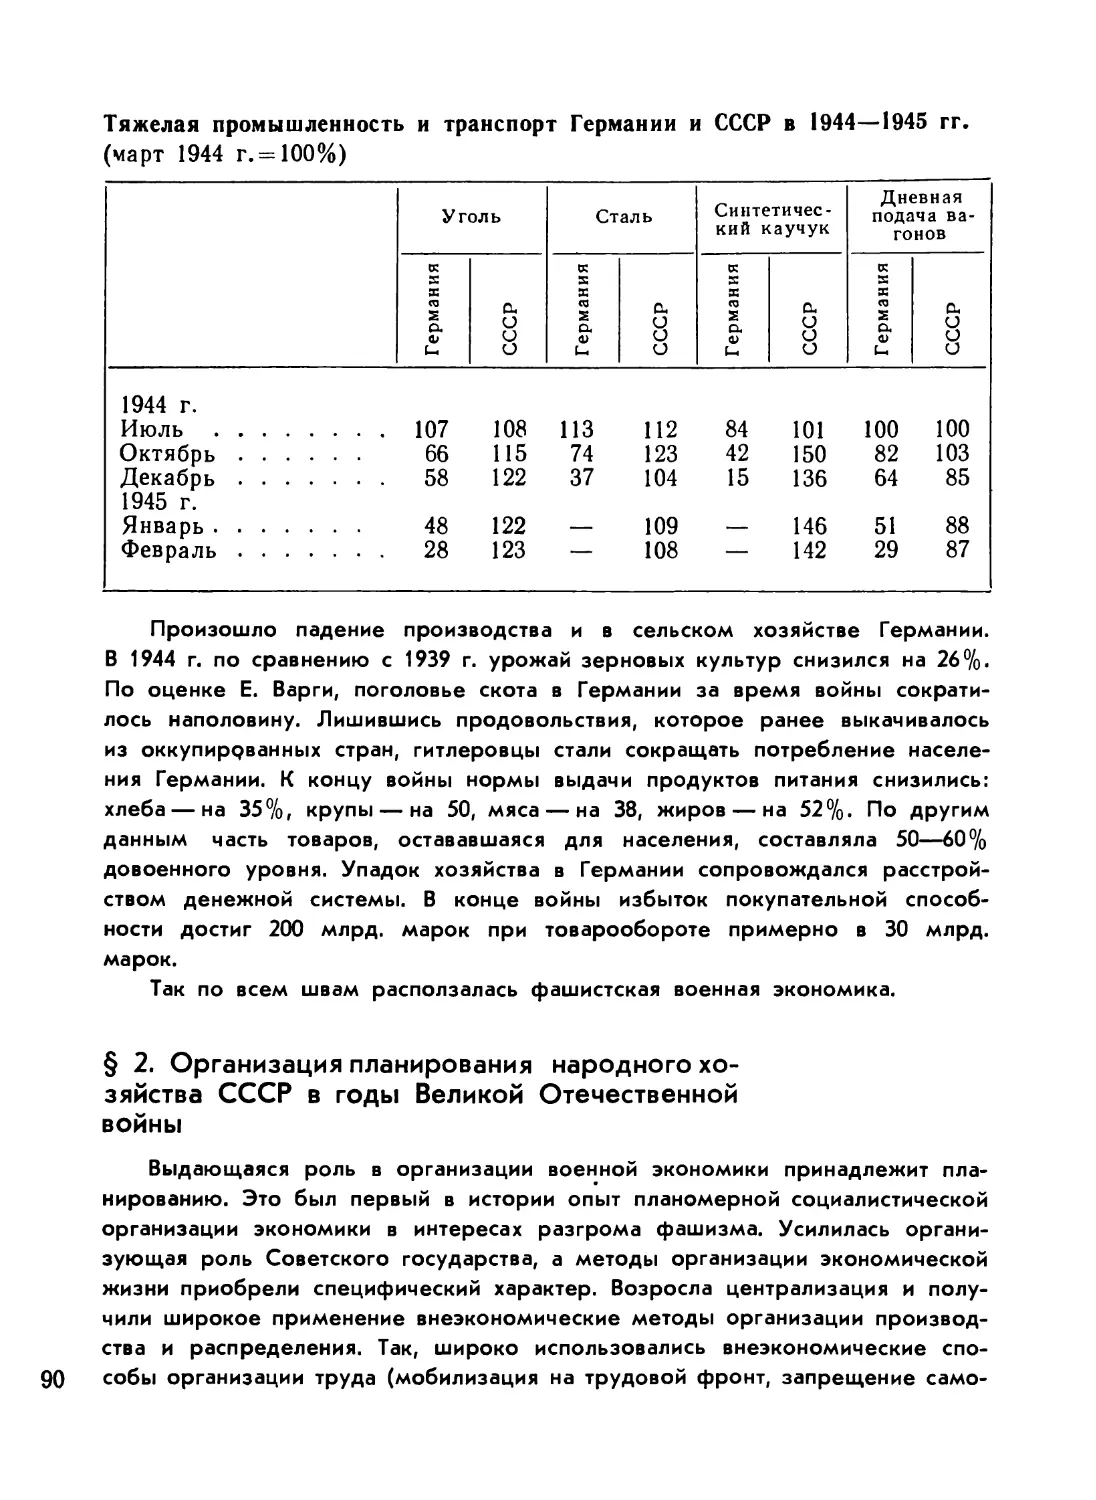 § 2. Организация планирования народного хозяйства СССР в годы Великой Отечественной войны